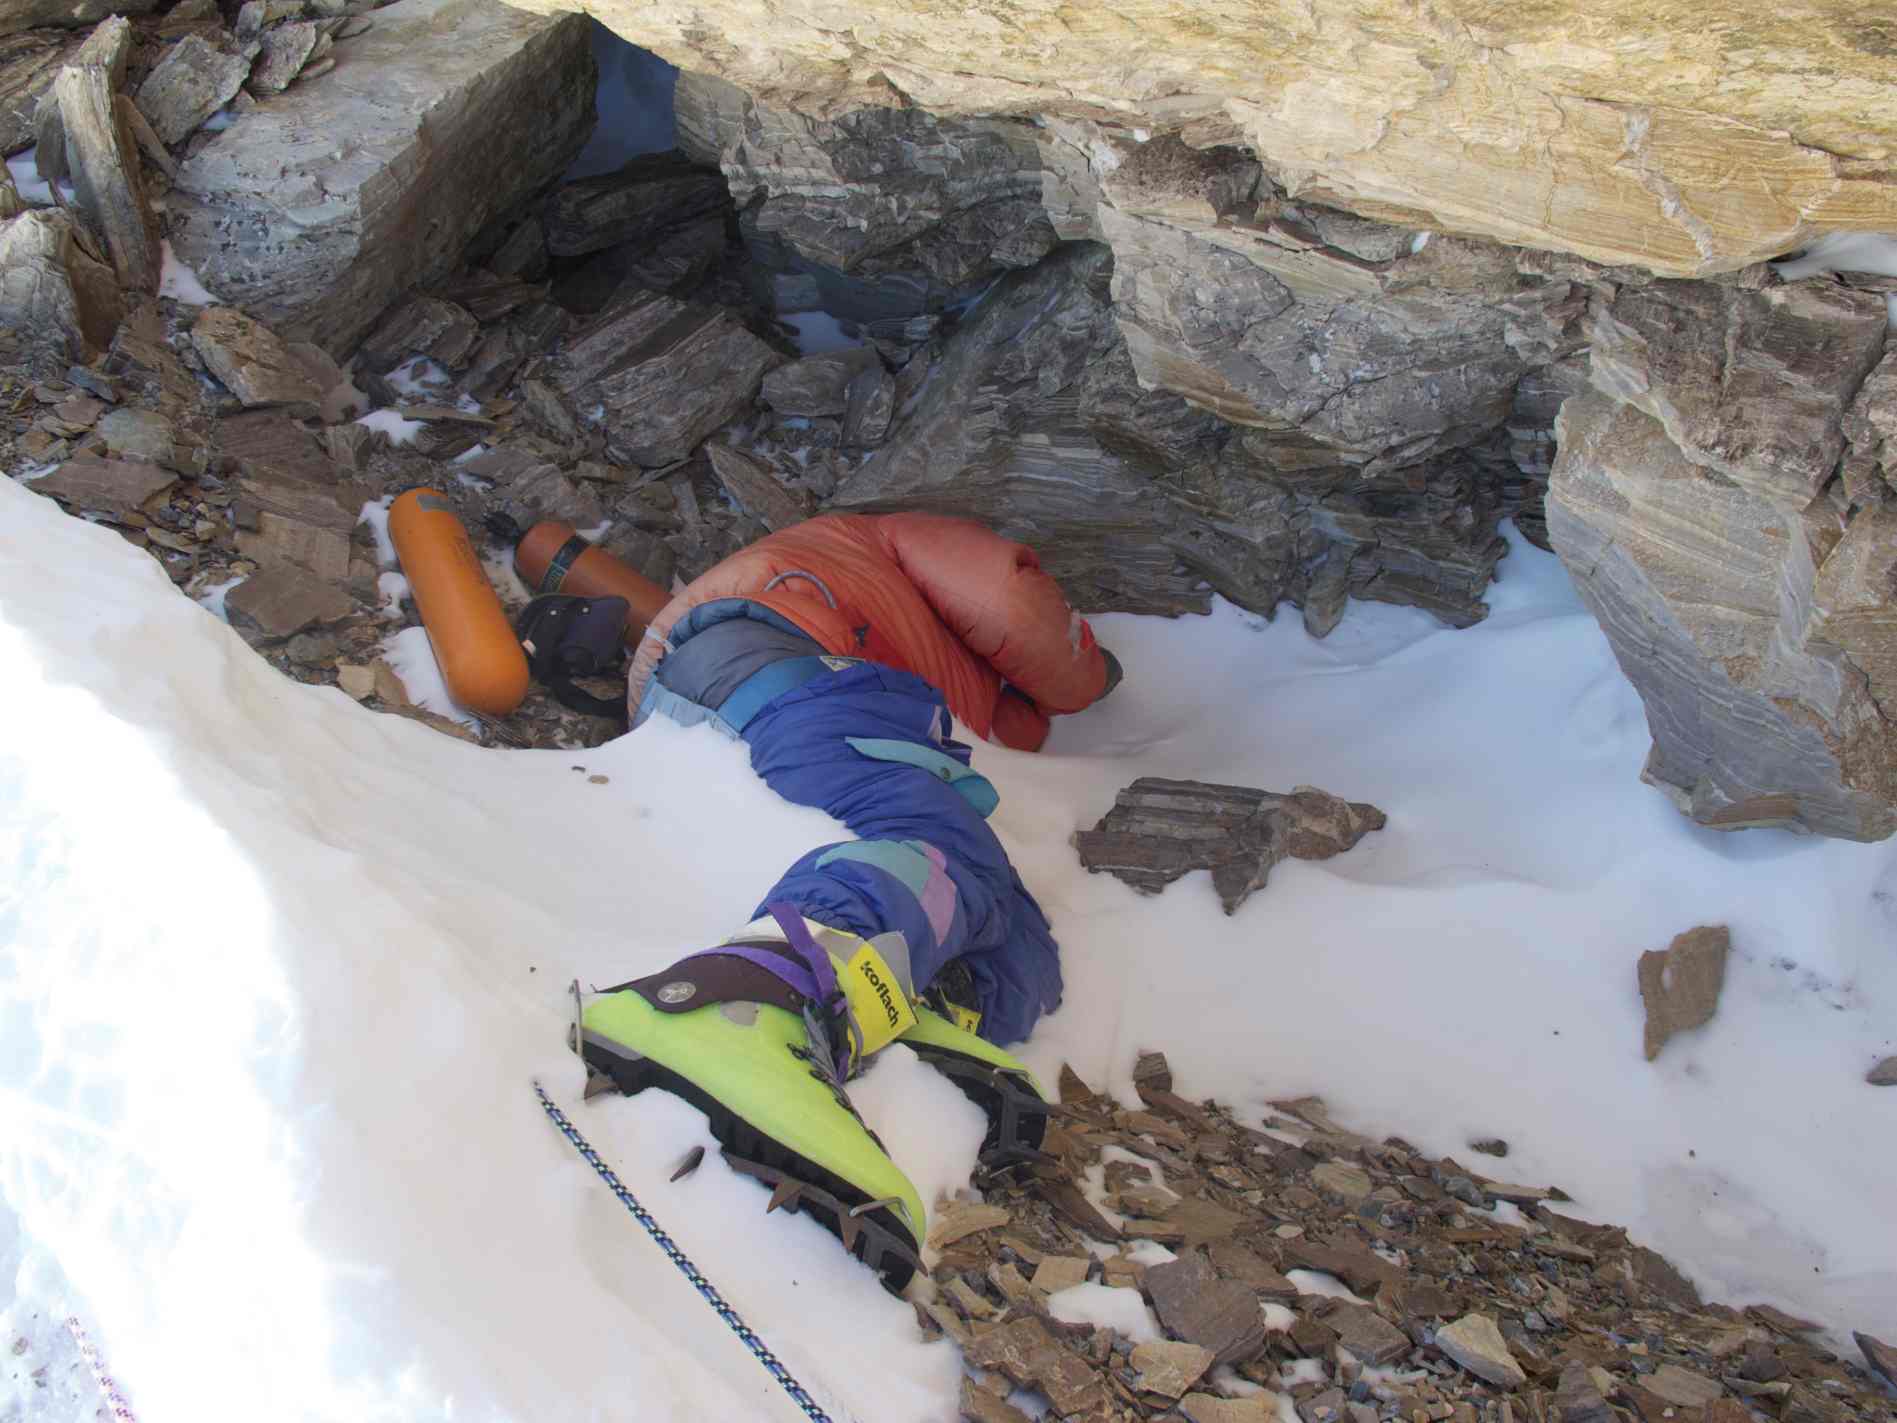 Foto de "Green Boots", escalador indio que murió en la cresta noreste del monte. Everest en 1996